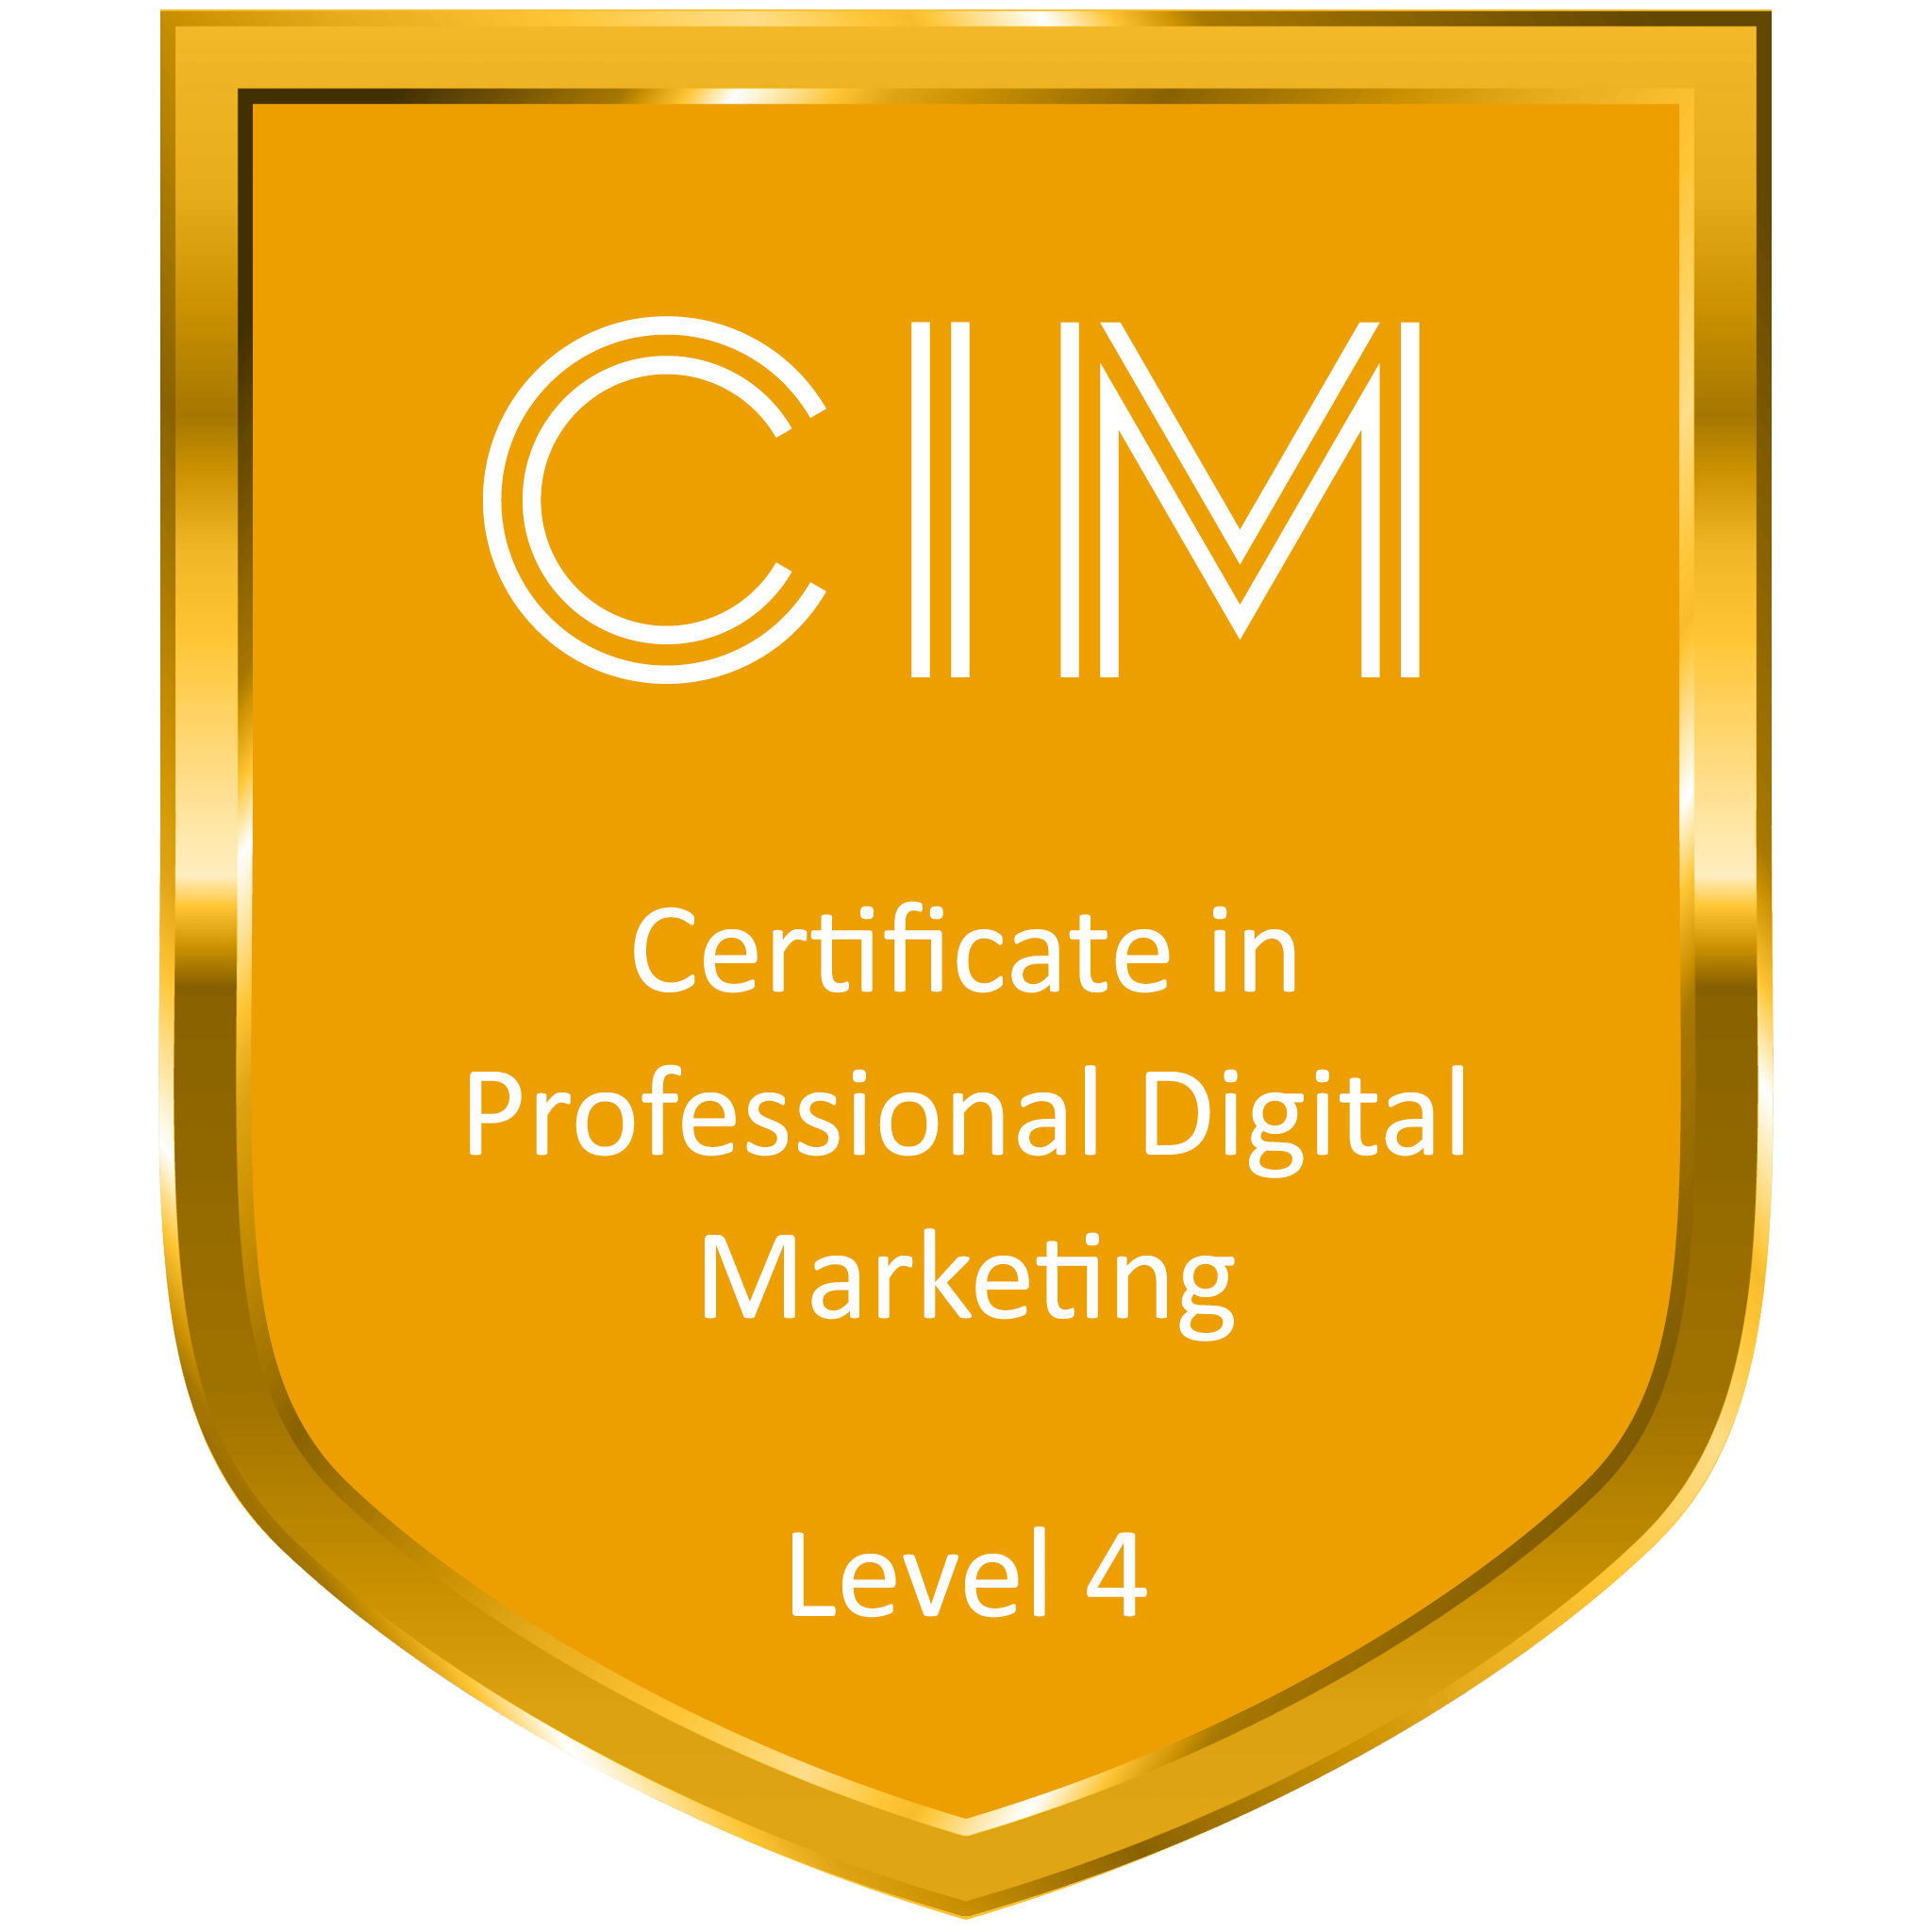 CIM certificate in professional digital marketing